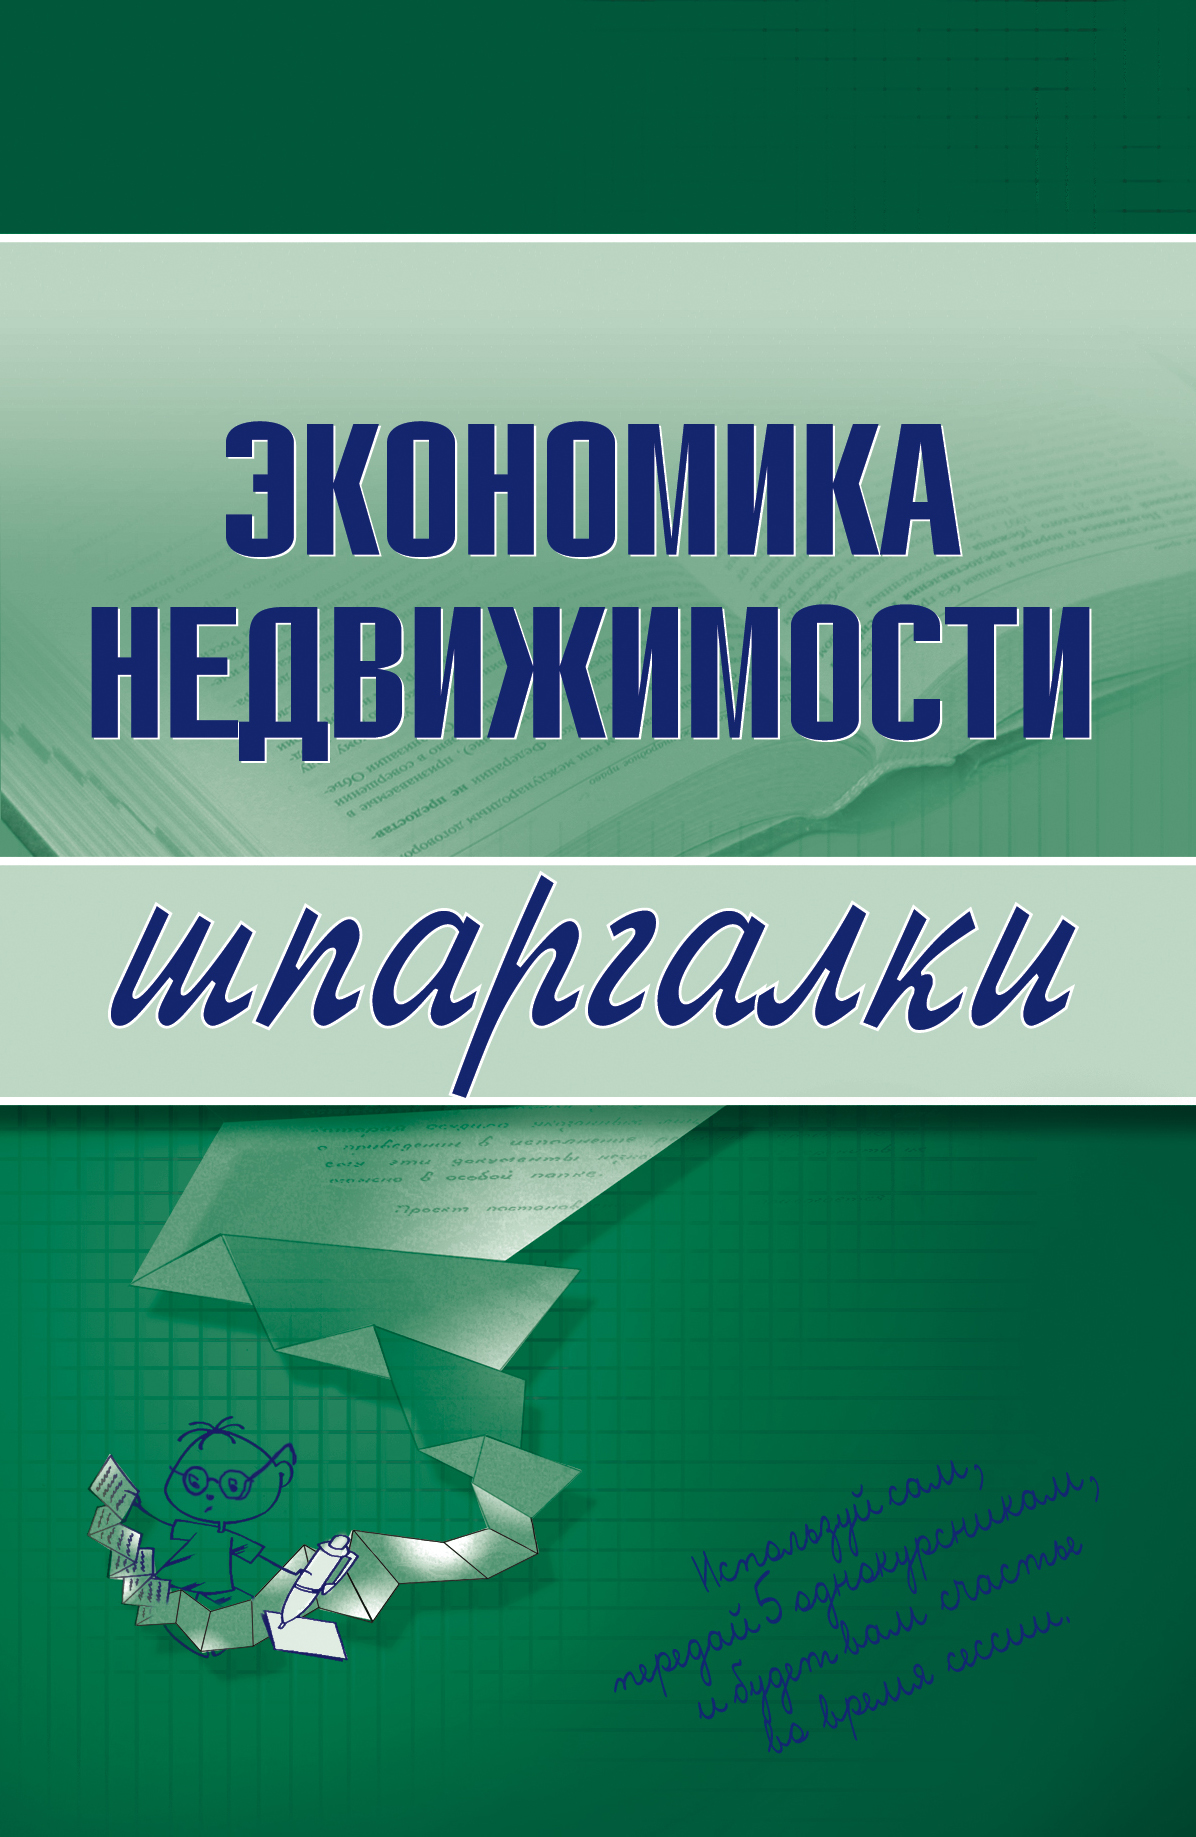 Книга Экономика недвижимости из серии , созданная Наталья Бурханова, может относится к жанру Справочники. Стоимость книги Экономика недвижимости  с идентификатором 167161 составляет 59.90 руб.